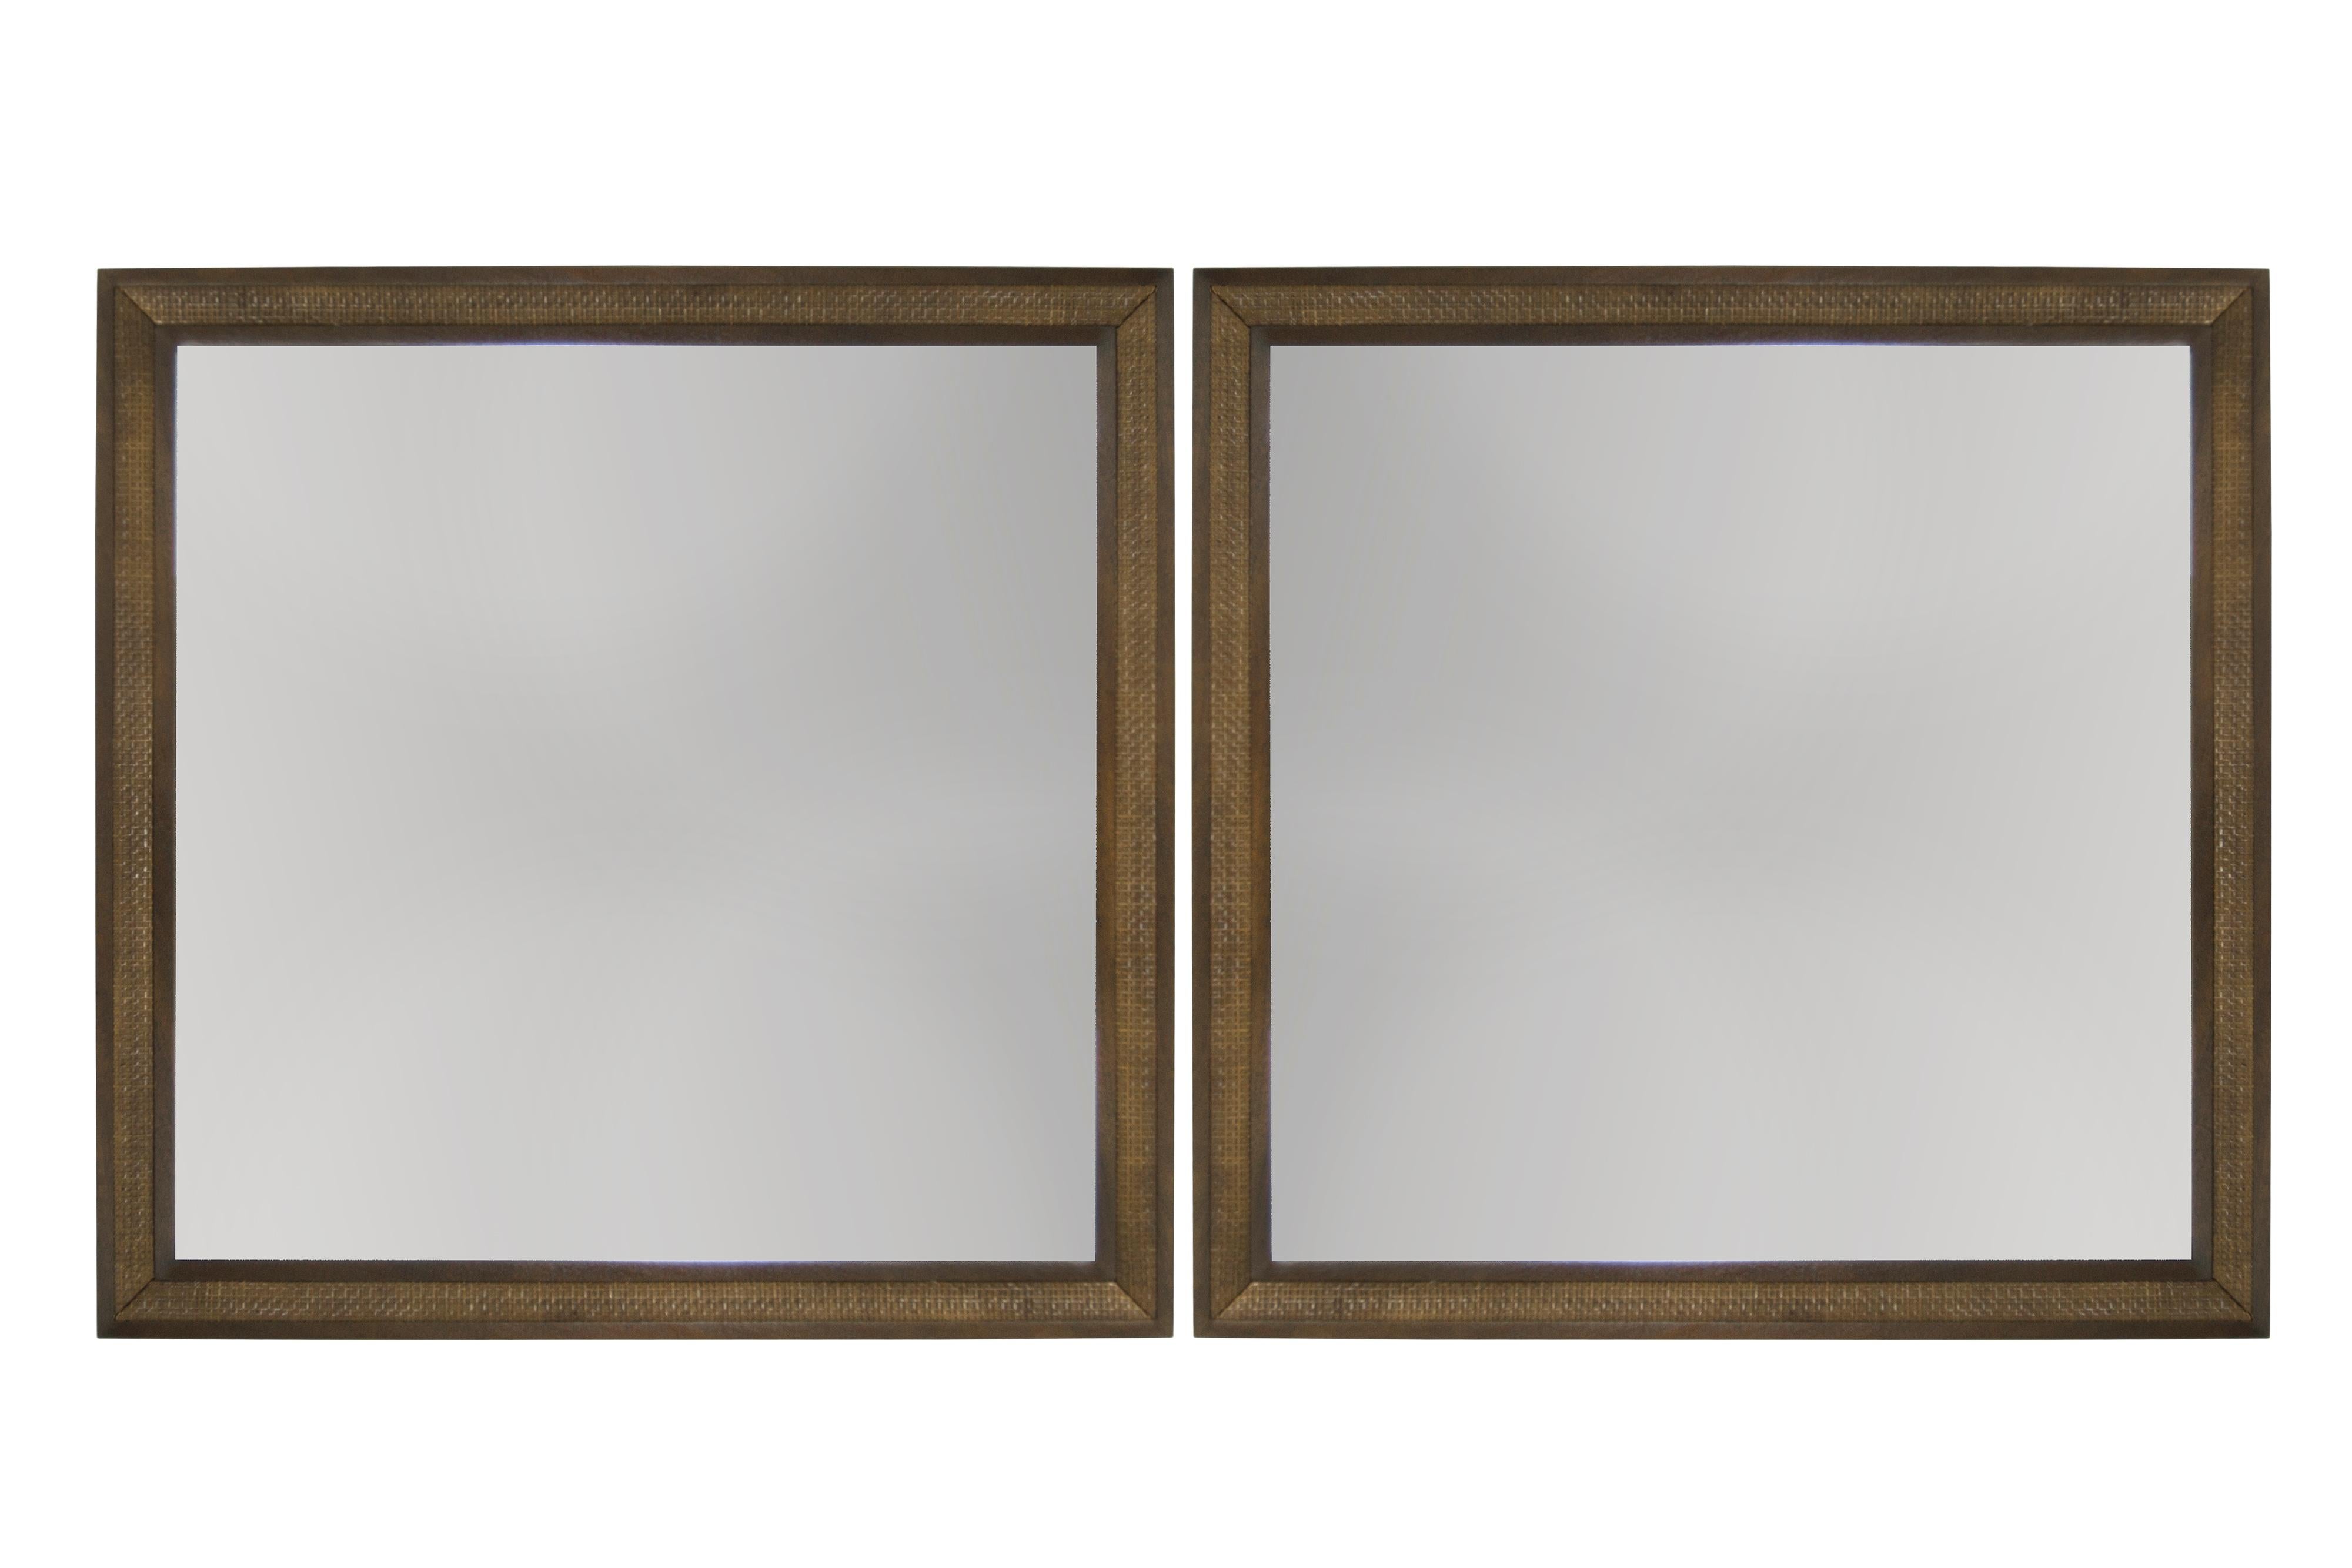 Seltener Satz passender Spiegel, entworfen von Edward Wormley für Dunbar, ca. 1950er Jahre. Mahagoni-Rahmen und -Verkleidung vollständig restauriert. Original-Spiegel in ausgezeichnetem Vintage-Zustand.